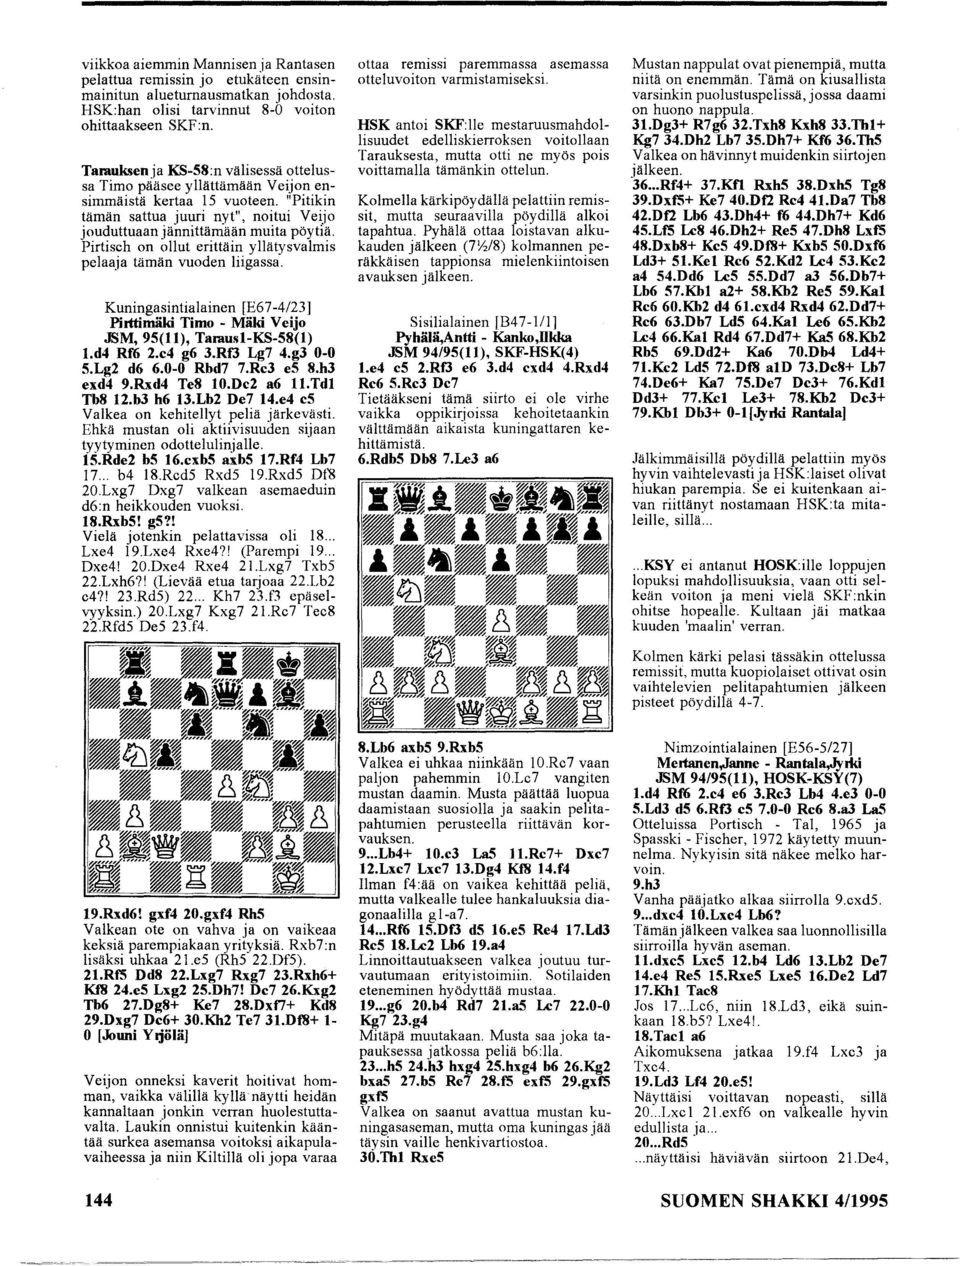 Pirtiseh on ollut erittäin yllätysvalmis pelaaja tämän vuoden liigassa. Kuningasintialainen [E67-4123] Pirttimäki Timo - Mäki Veijo JSM, 9S(11), Tamusl-KS-S8(1) l.d4 Rf6 2.c4 g6 3.RfJ Lg7 4.g3 0-0 S.